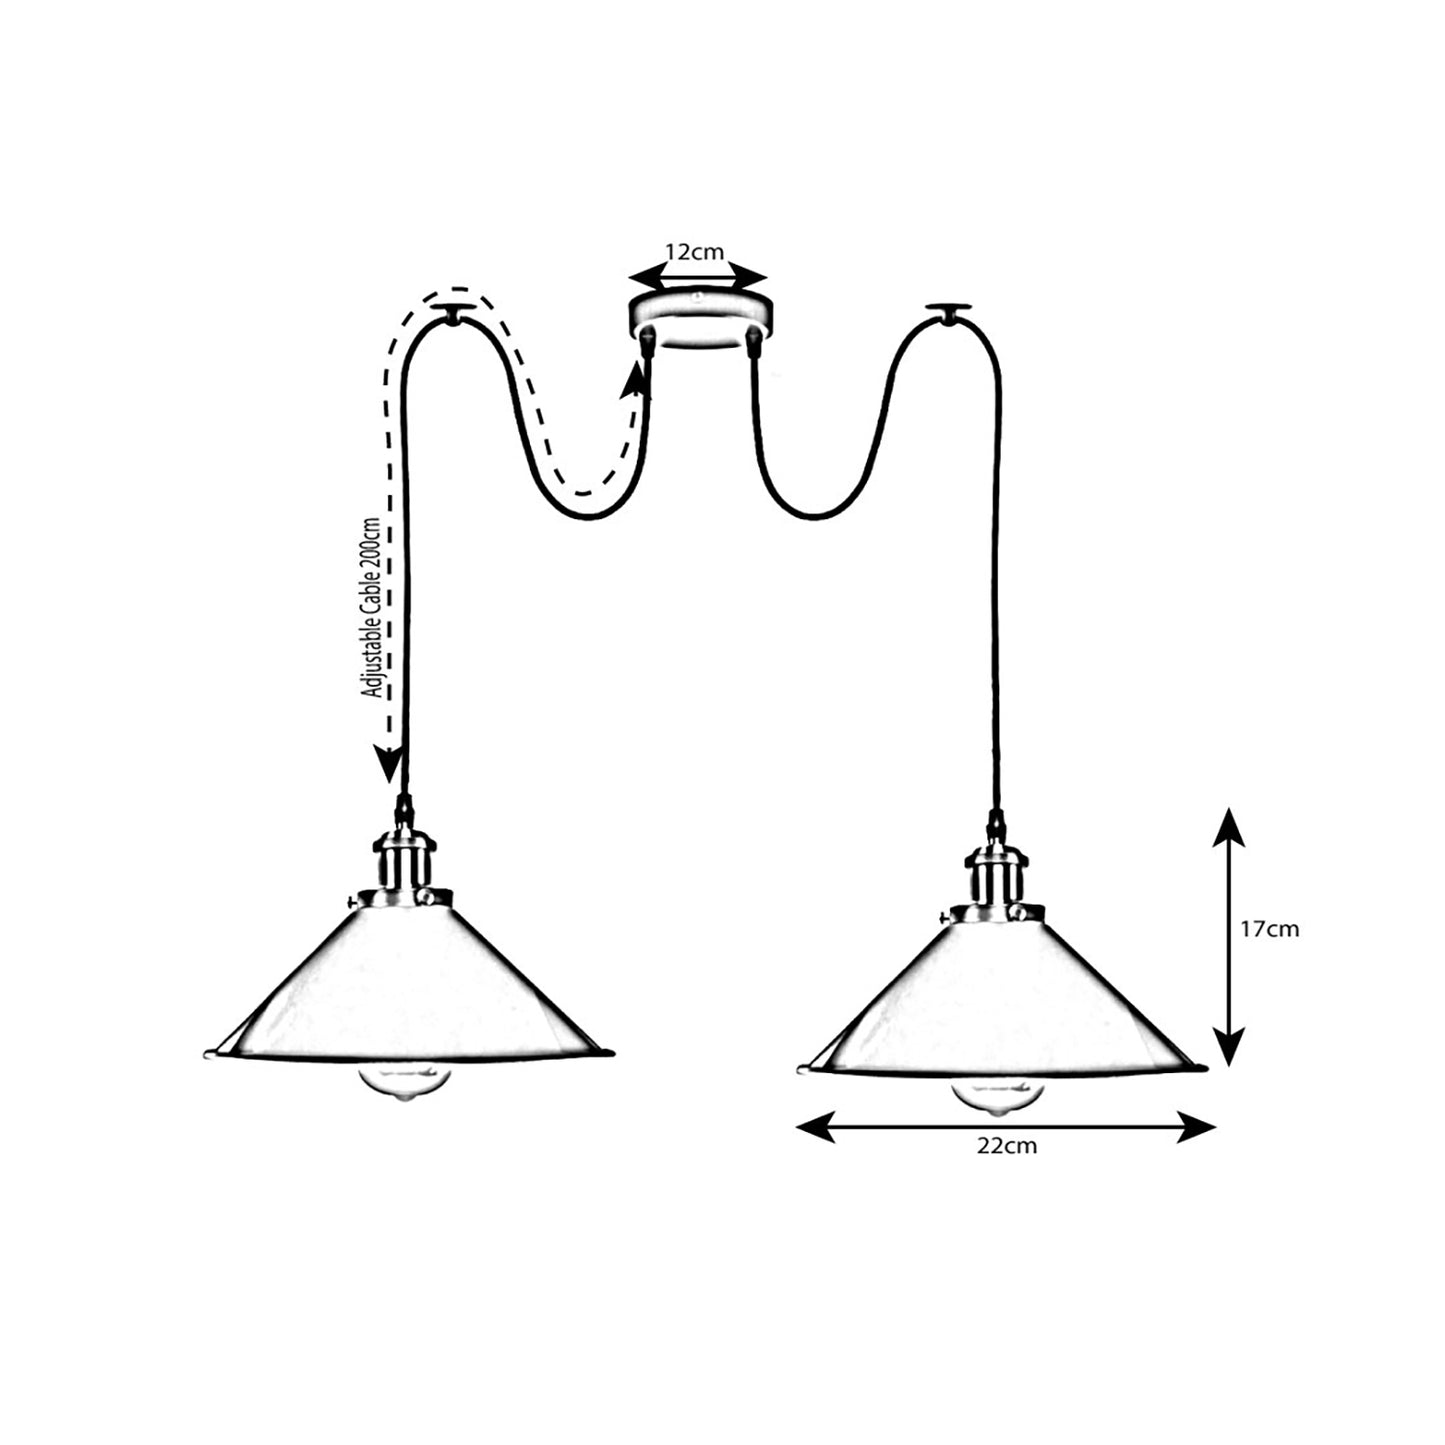 Spider Lamp Shades UK - Retro Industrial Pendant Light ~ 2236